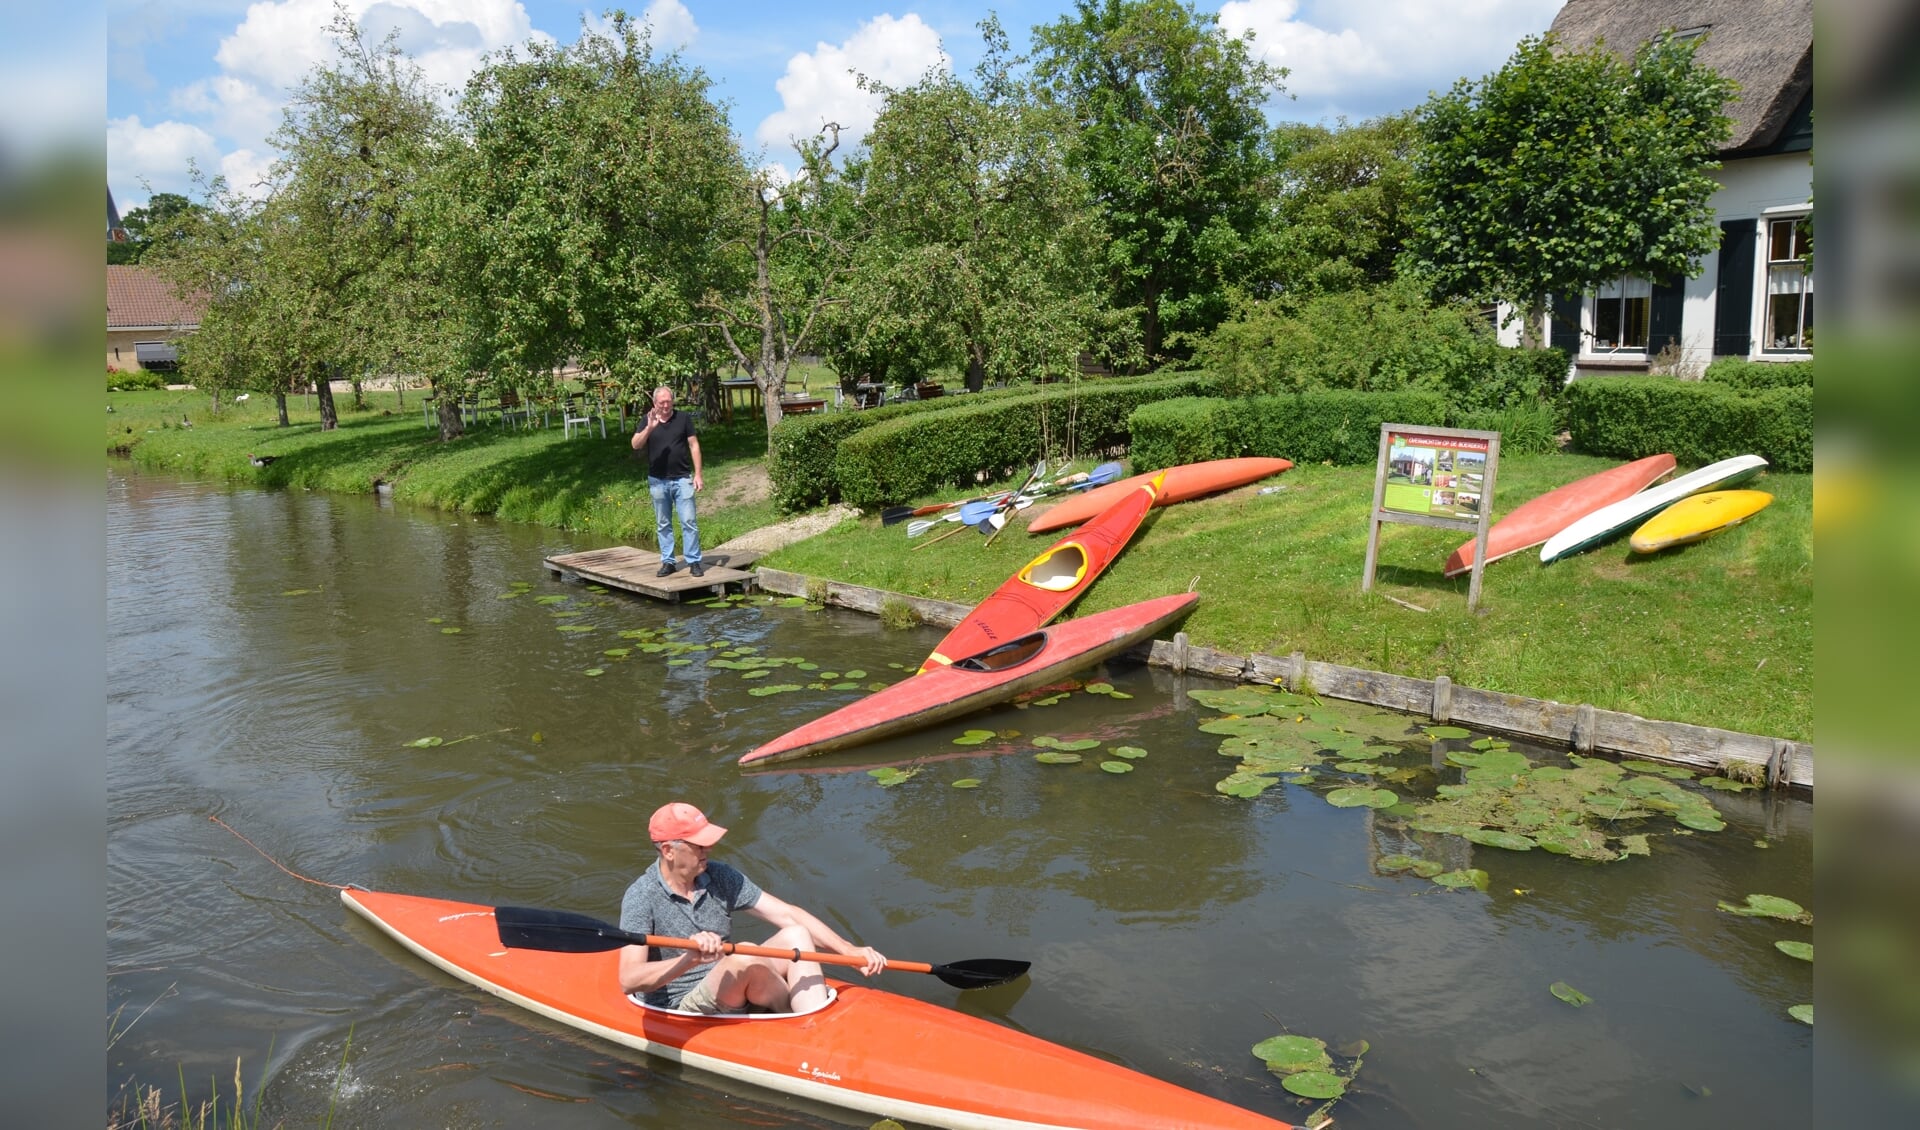 In plaats van een buitenlandse vakantie kozen inwoners van de provincie Utrecht massaal voor vakantie in eigen land. Bijvoorbeeld in de Kromme Rijnstreek, waar het goed kanoën is.